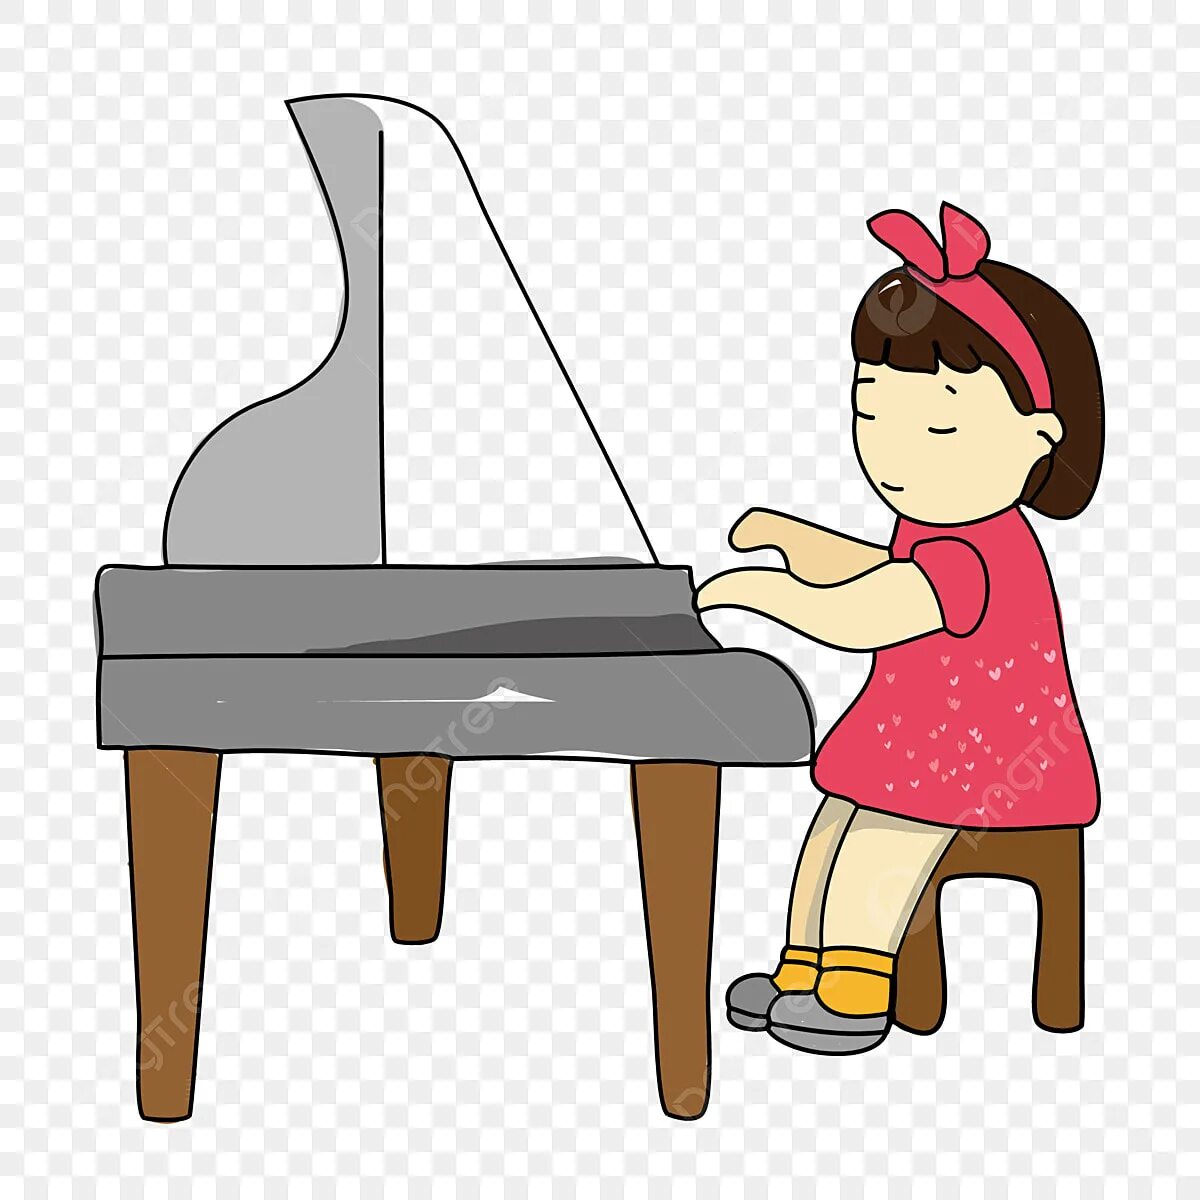 He plays the piano they. Фортепиано мультяшная. Фортепиано рисунок. Пианино мультяшное. Ребенок за роялем мультяшный.